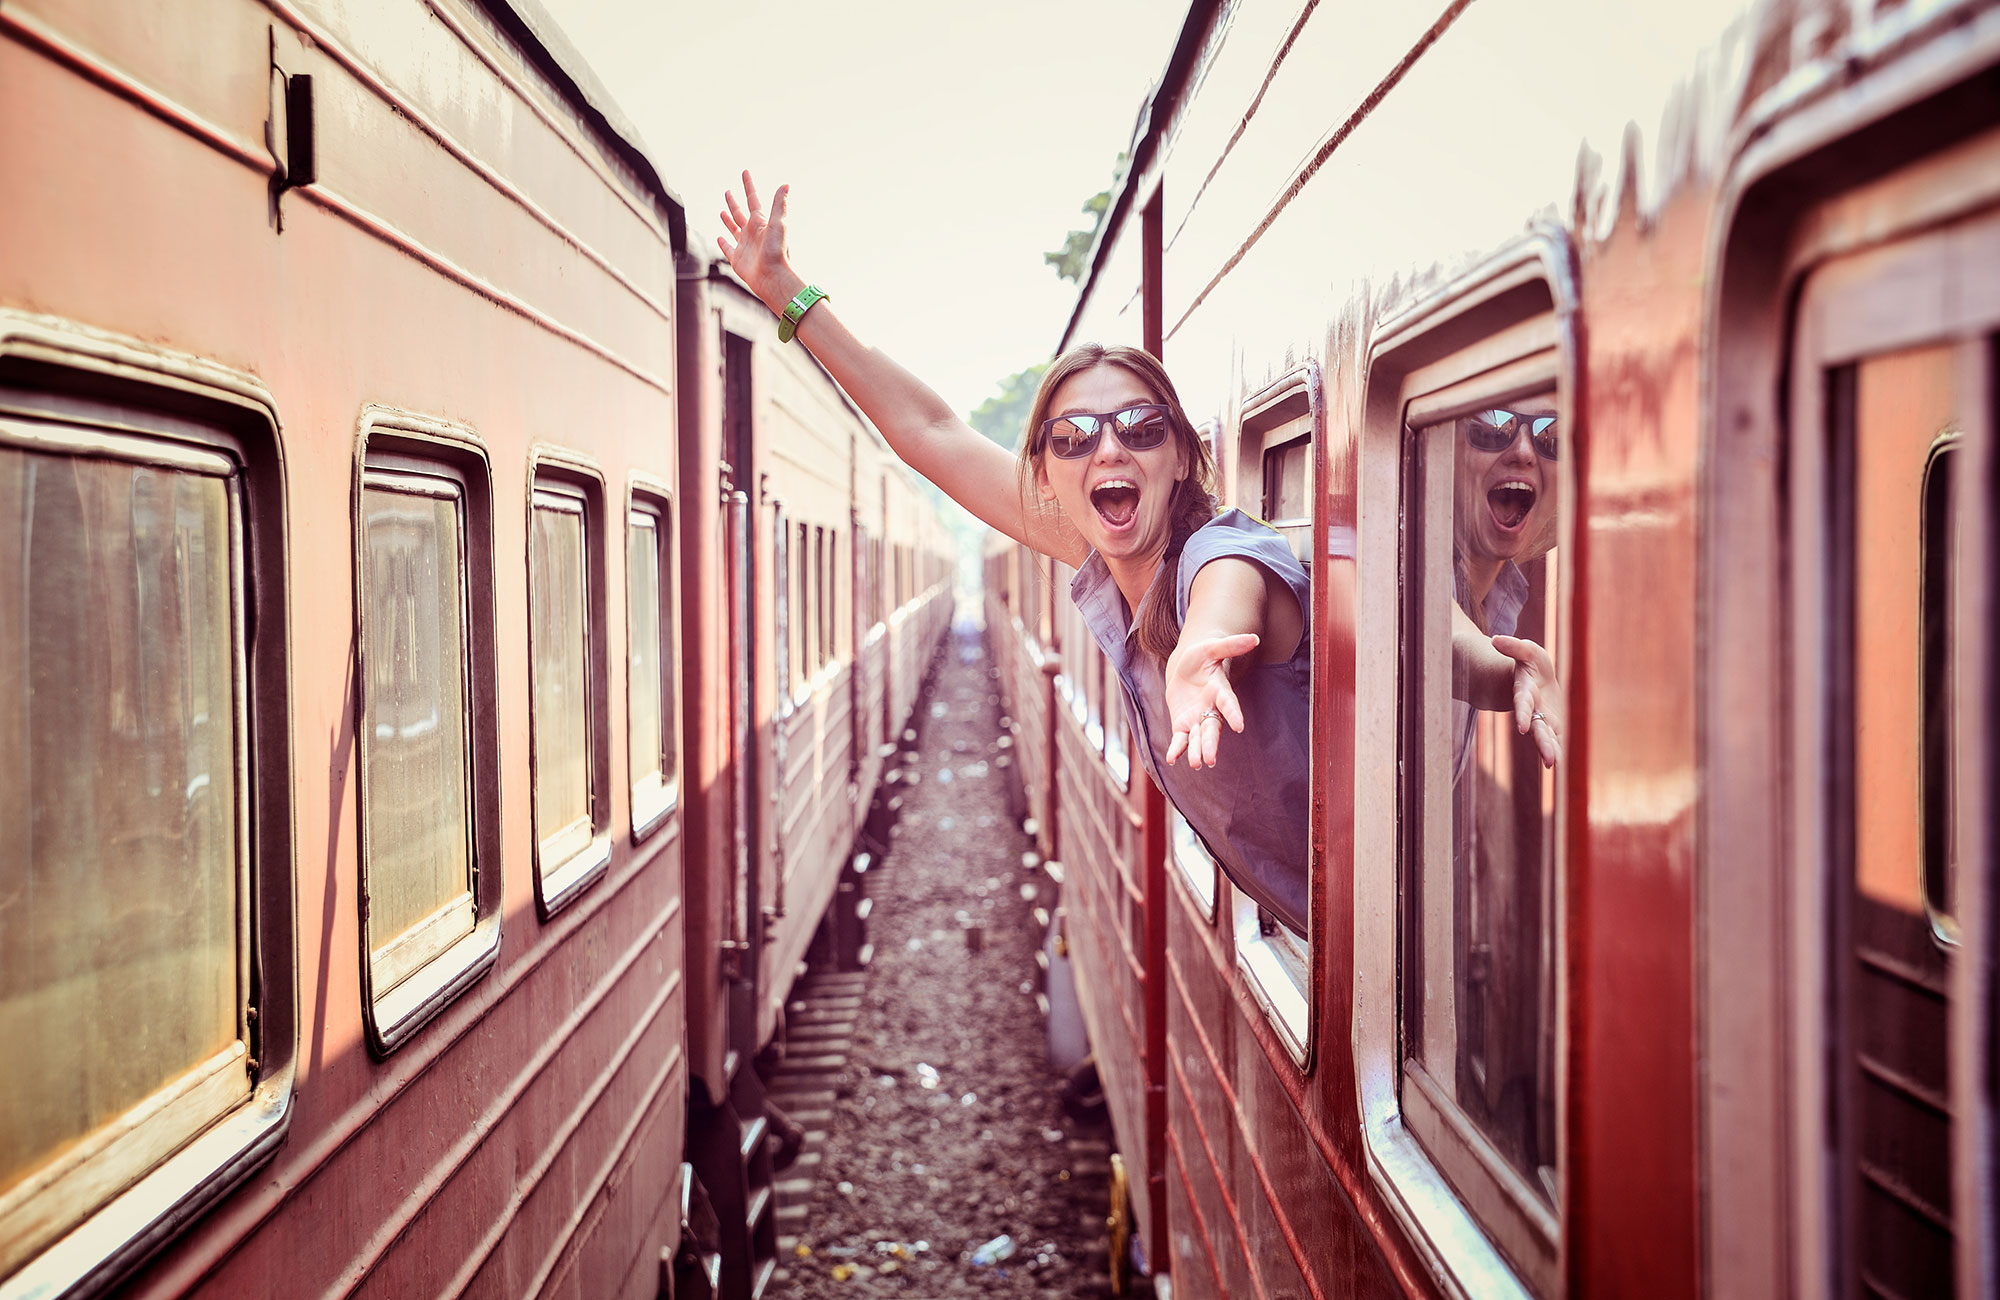 Вагон вошла она улыбнулась из окна. Окно поезда. Окно вагона. Фотосессия в поезде. Девушка едет в поезде.